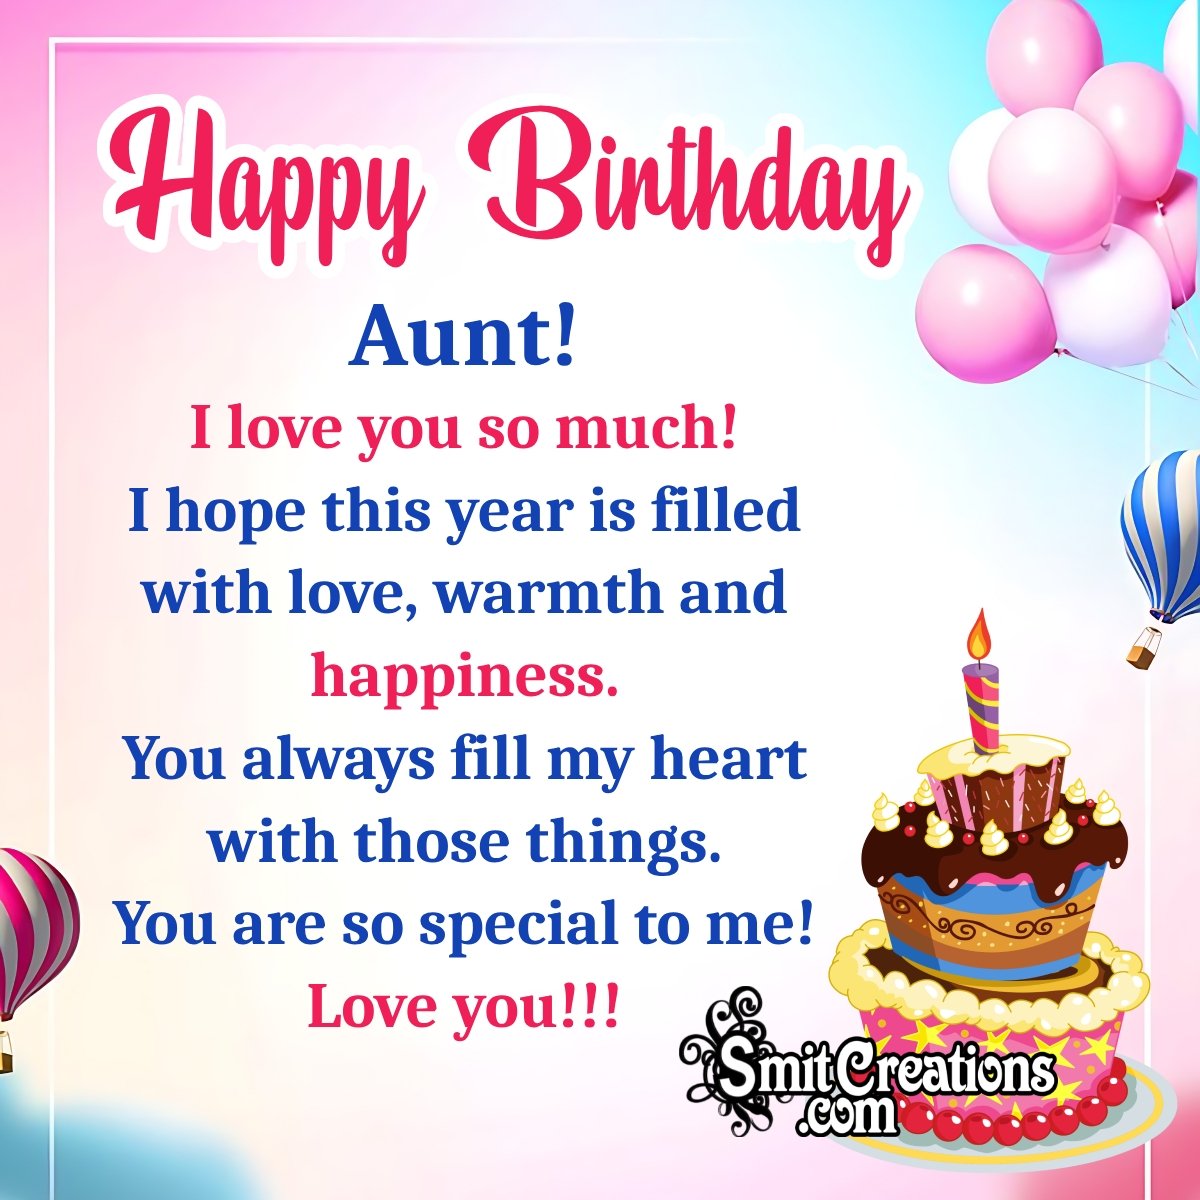 Happy Birthday Wish For Aunt